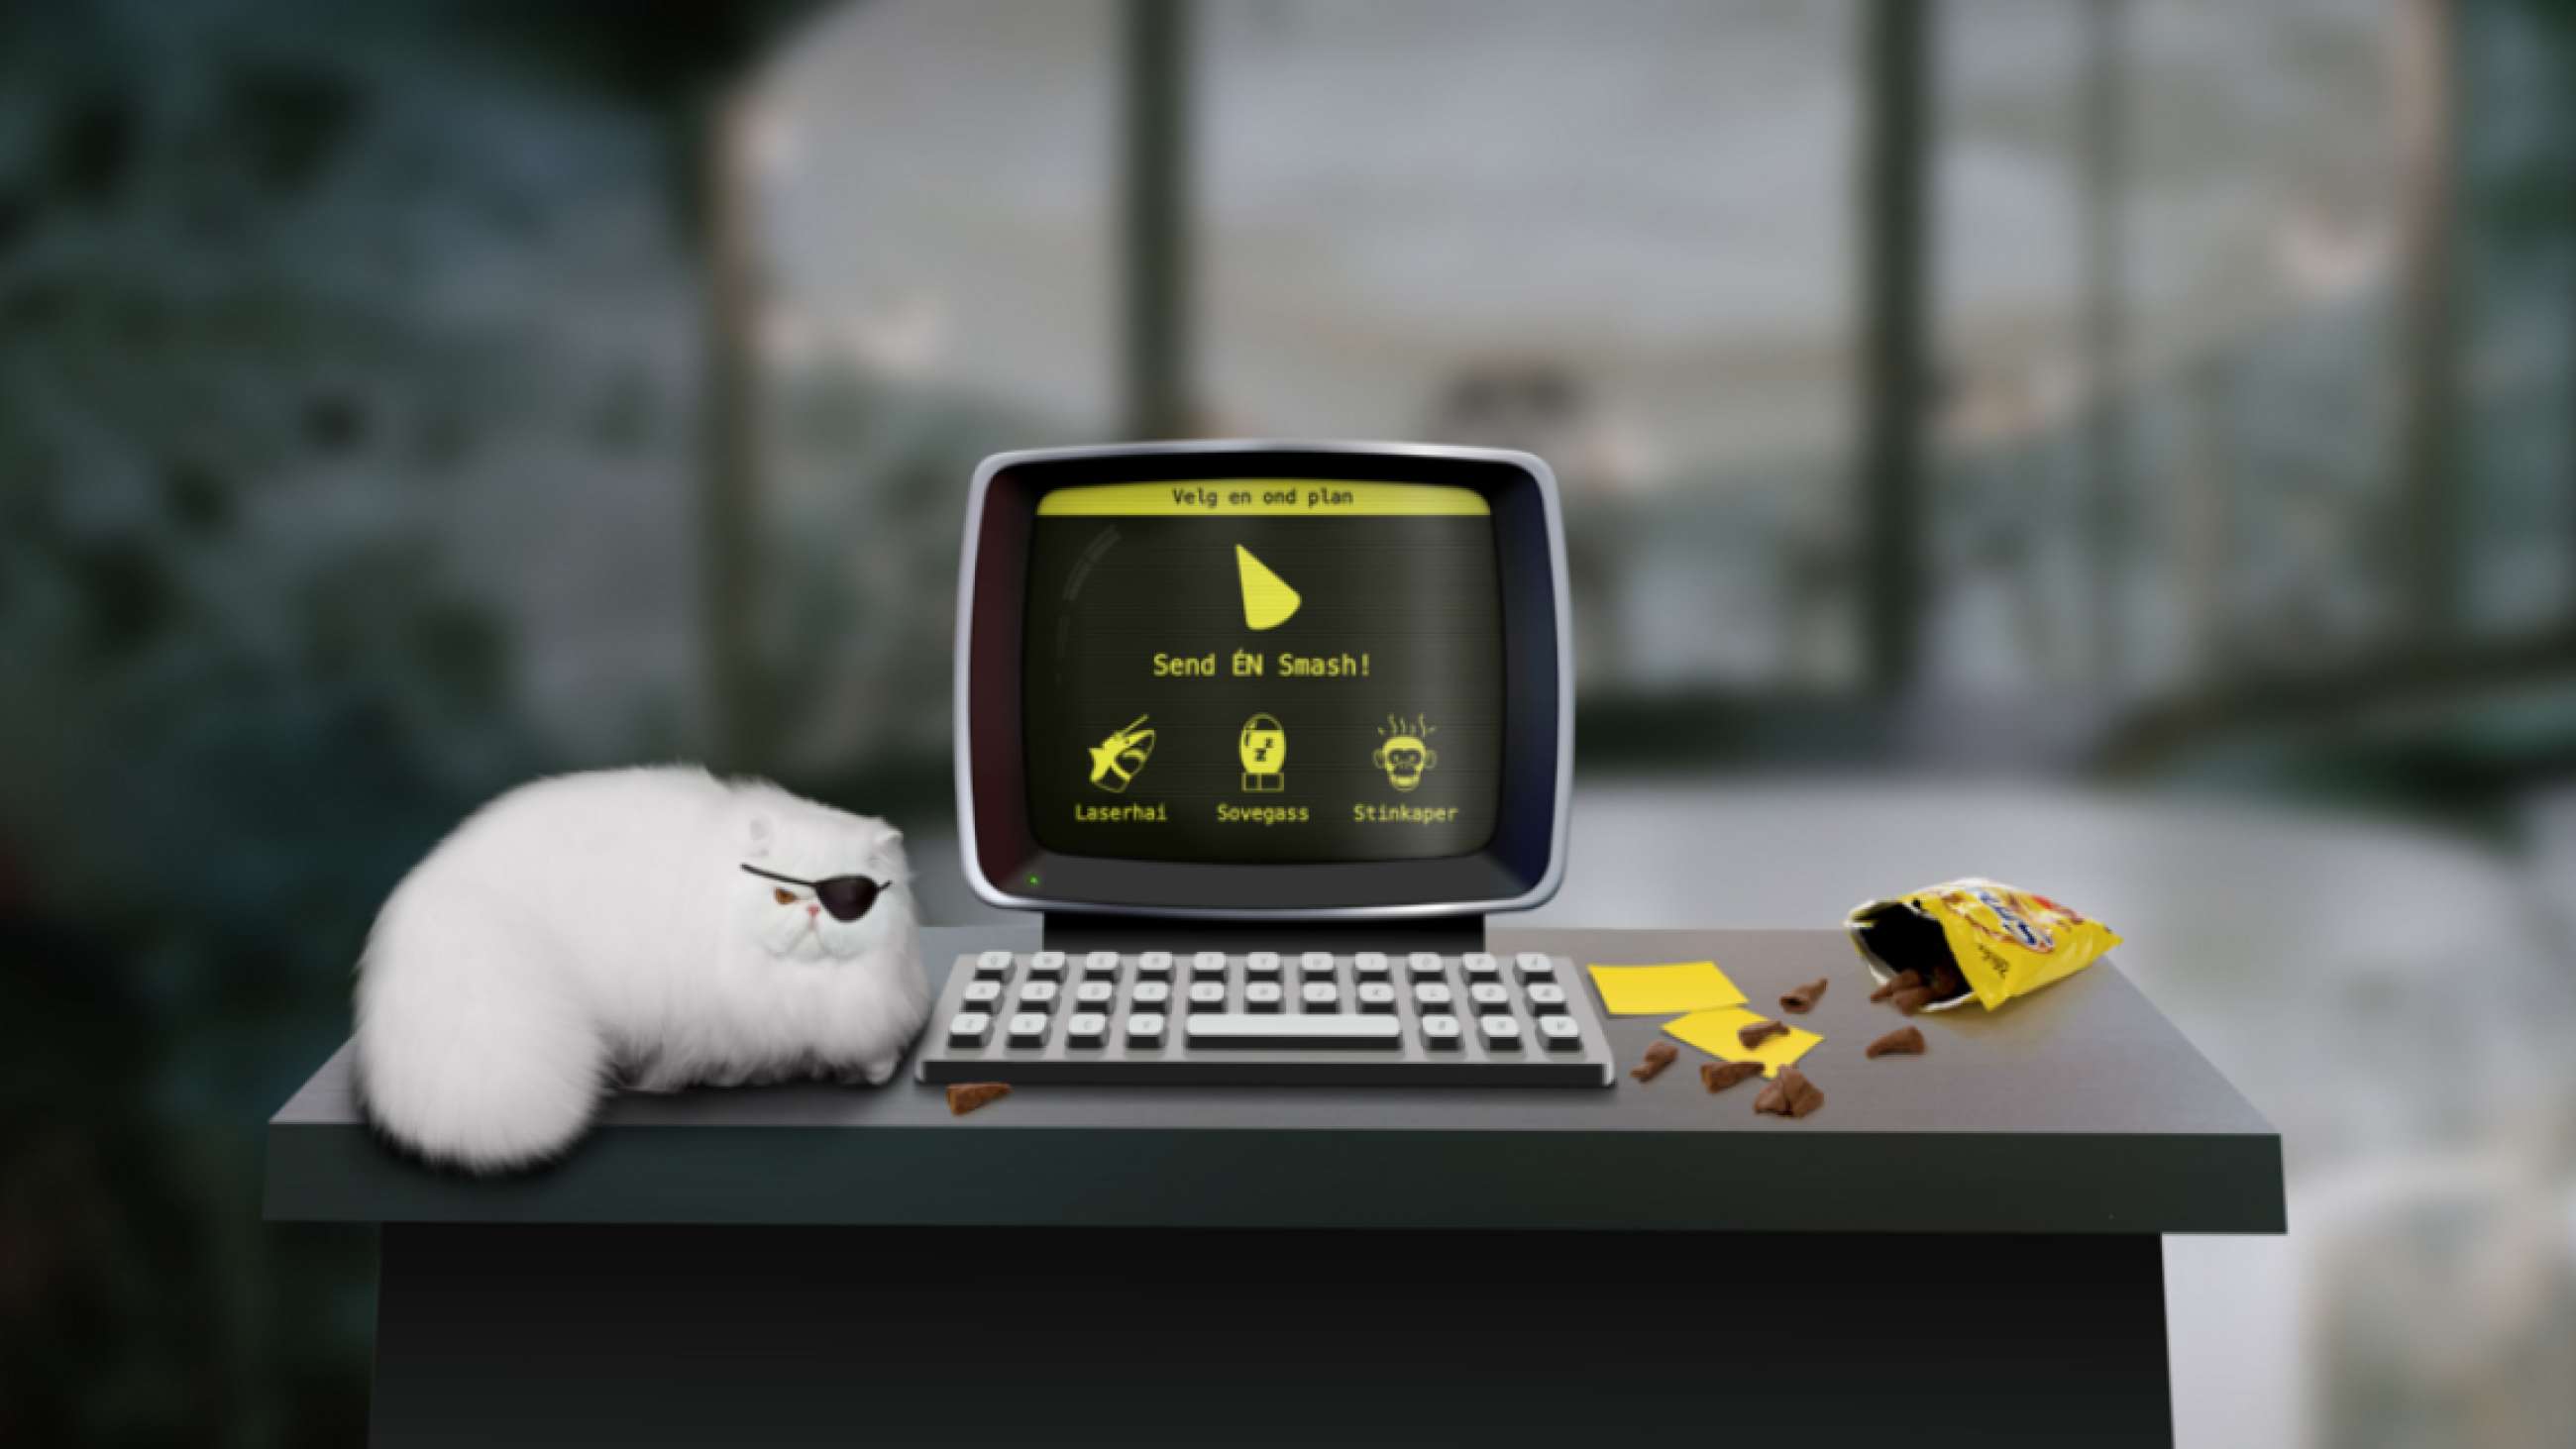 Illustrasjon fra Smash-kampanje. En hvit katt med lapp over øyet ved siden av en gammel pc og tastatur. En pose Smash ligger på bordet.